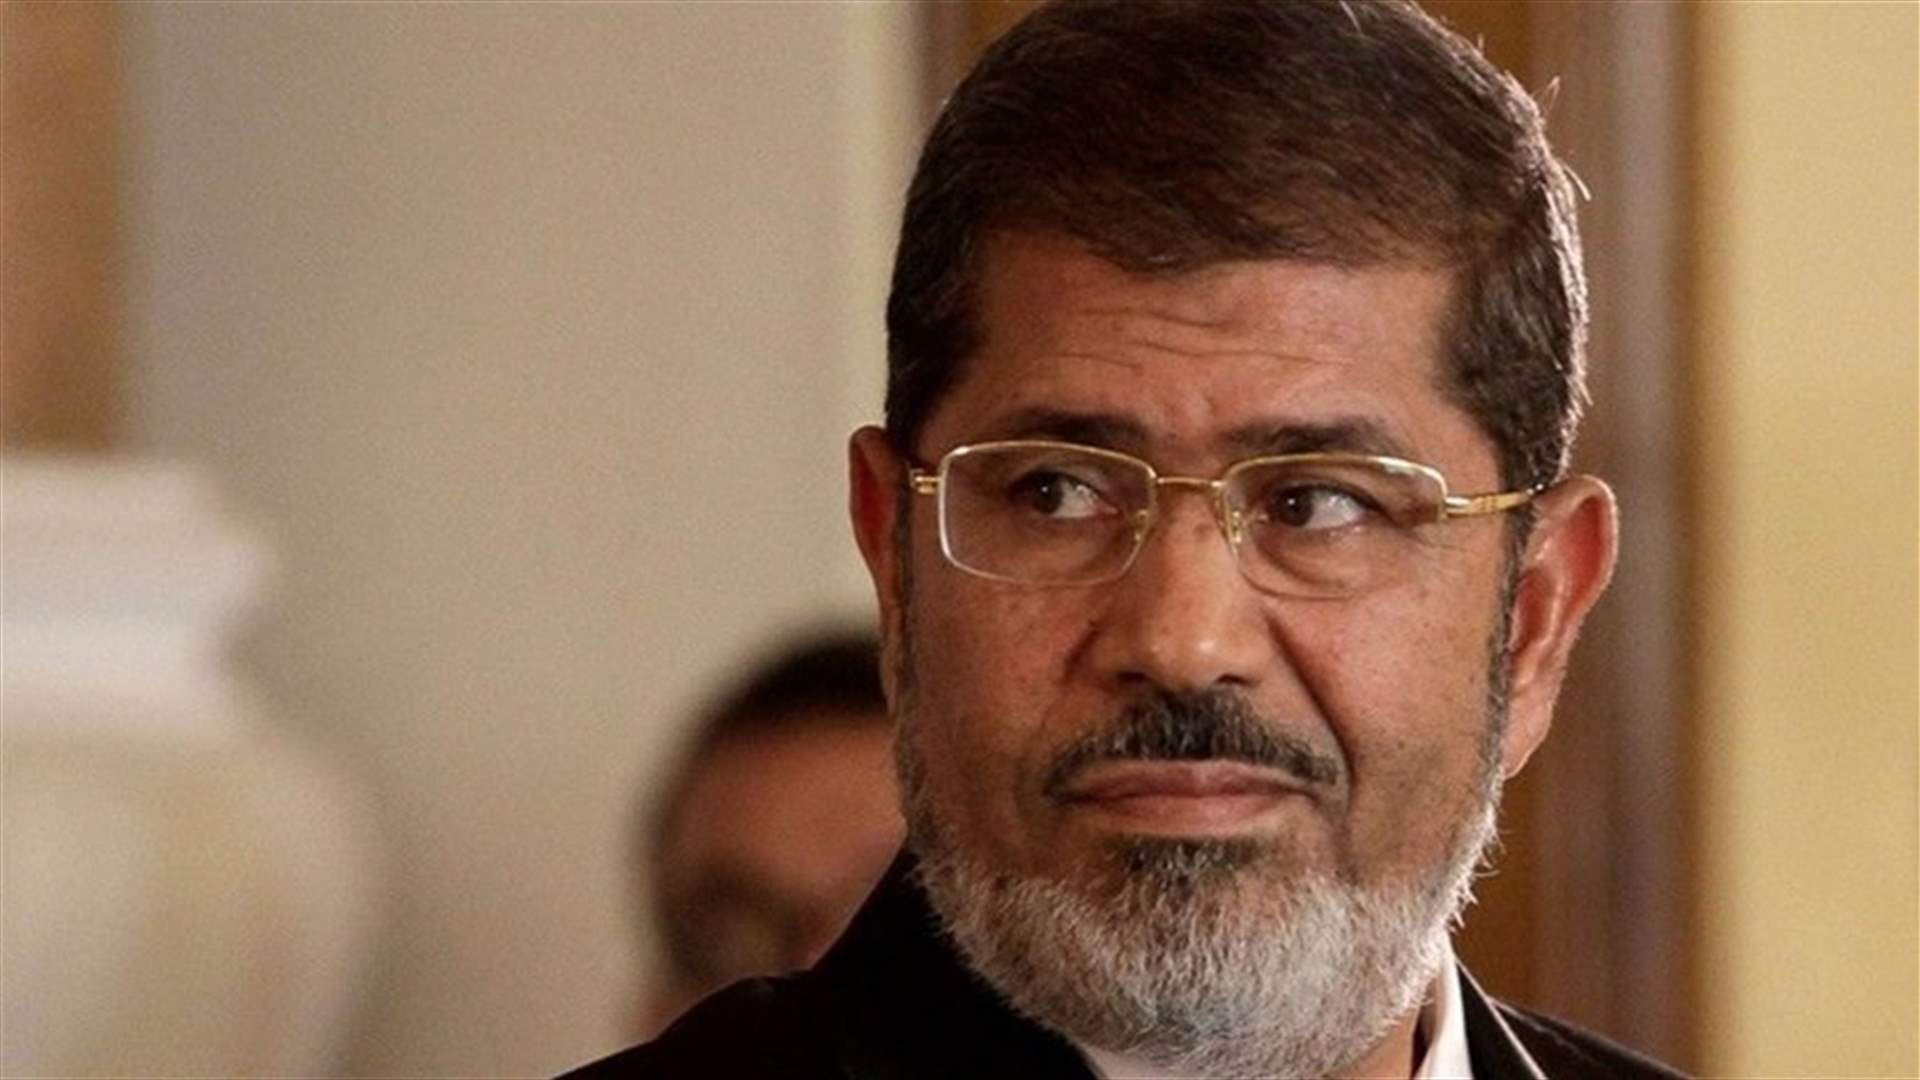 Former Egyptian president Mohamed Mursi buried in Cairo